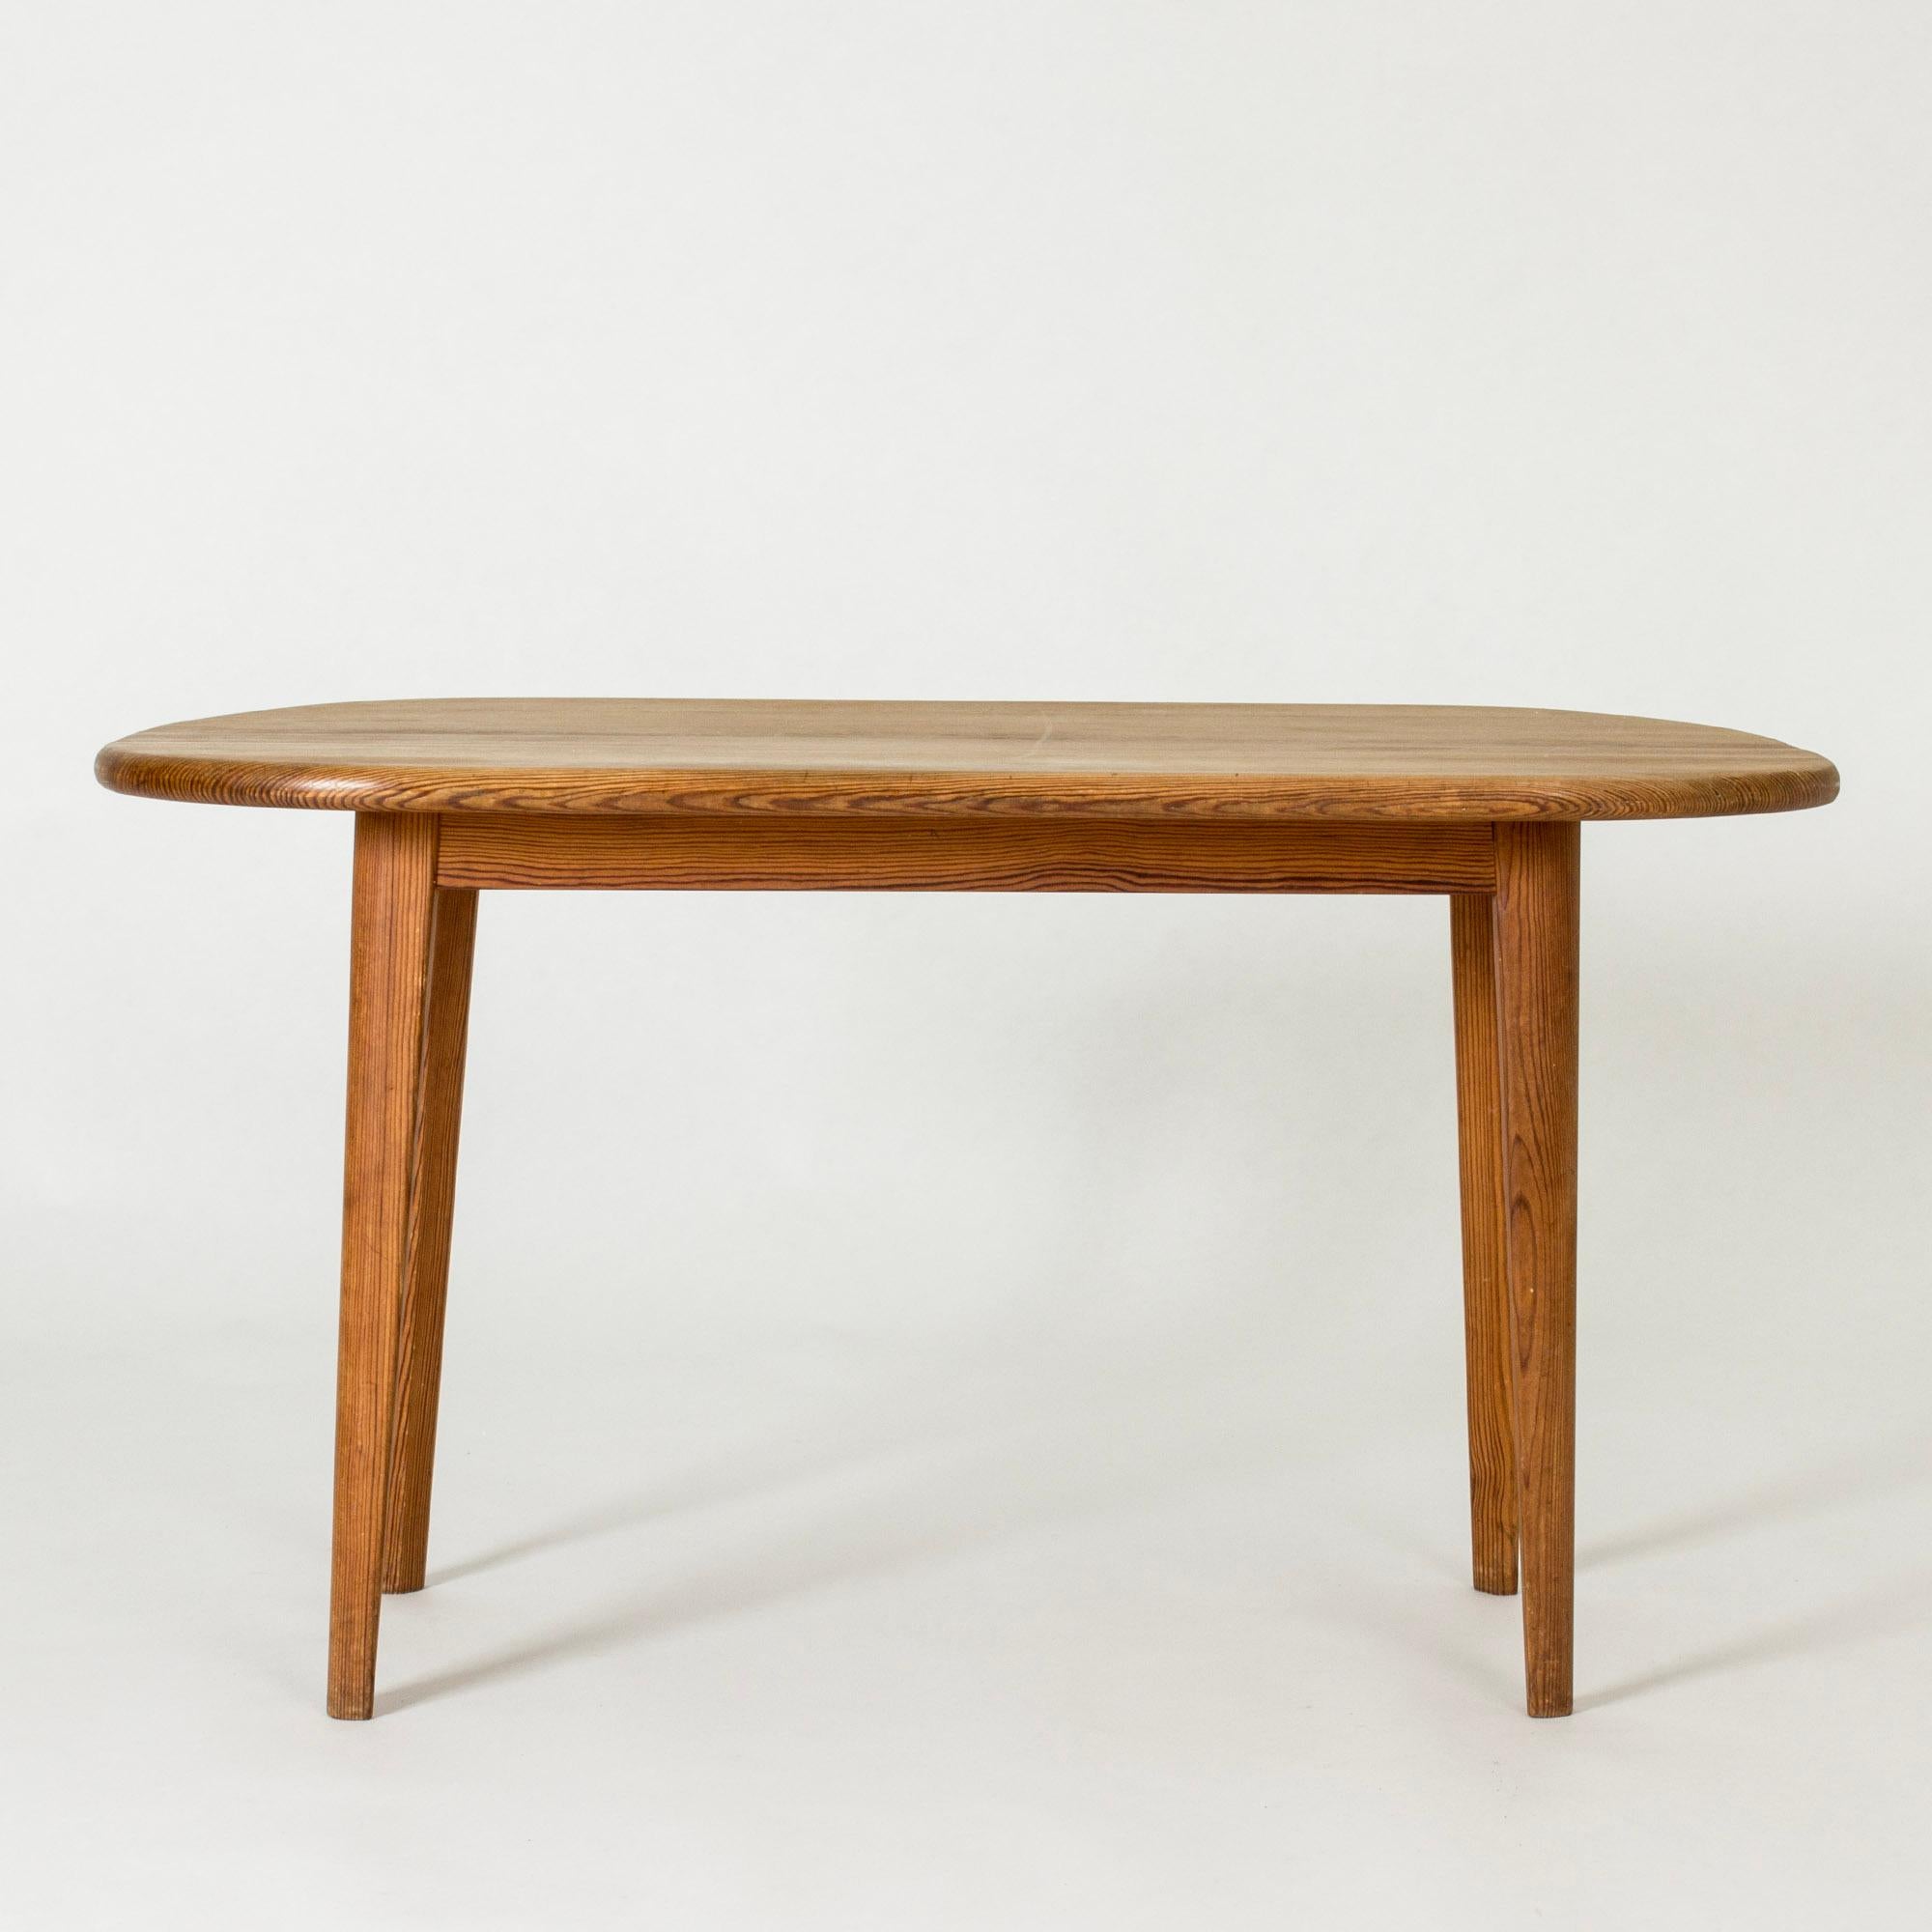 Magnifique table d'appoint de Carl Malmsten, fabriquée en pin avec de jolis motifs en bois. Formes lisses et arrondies.